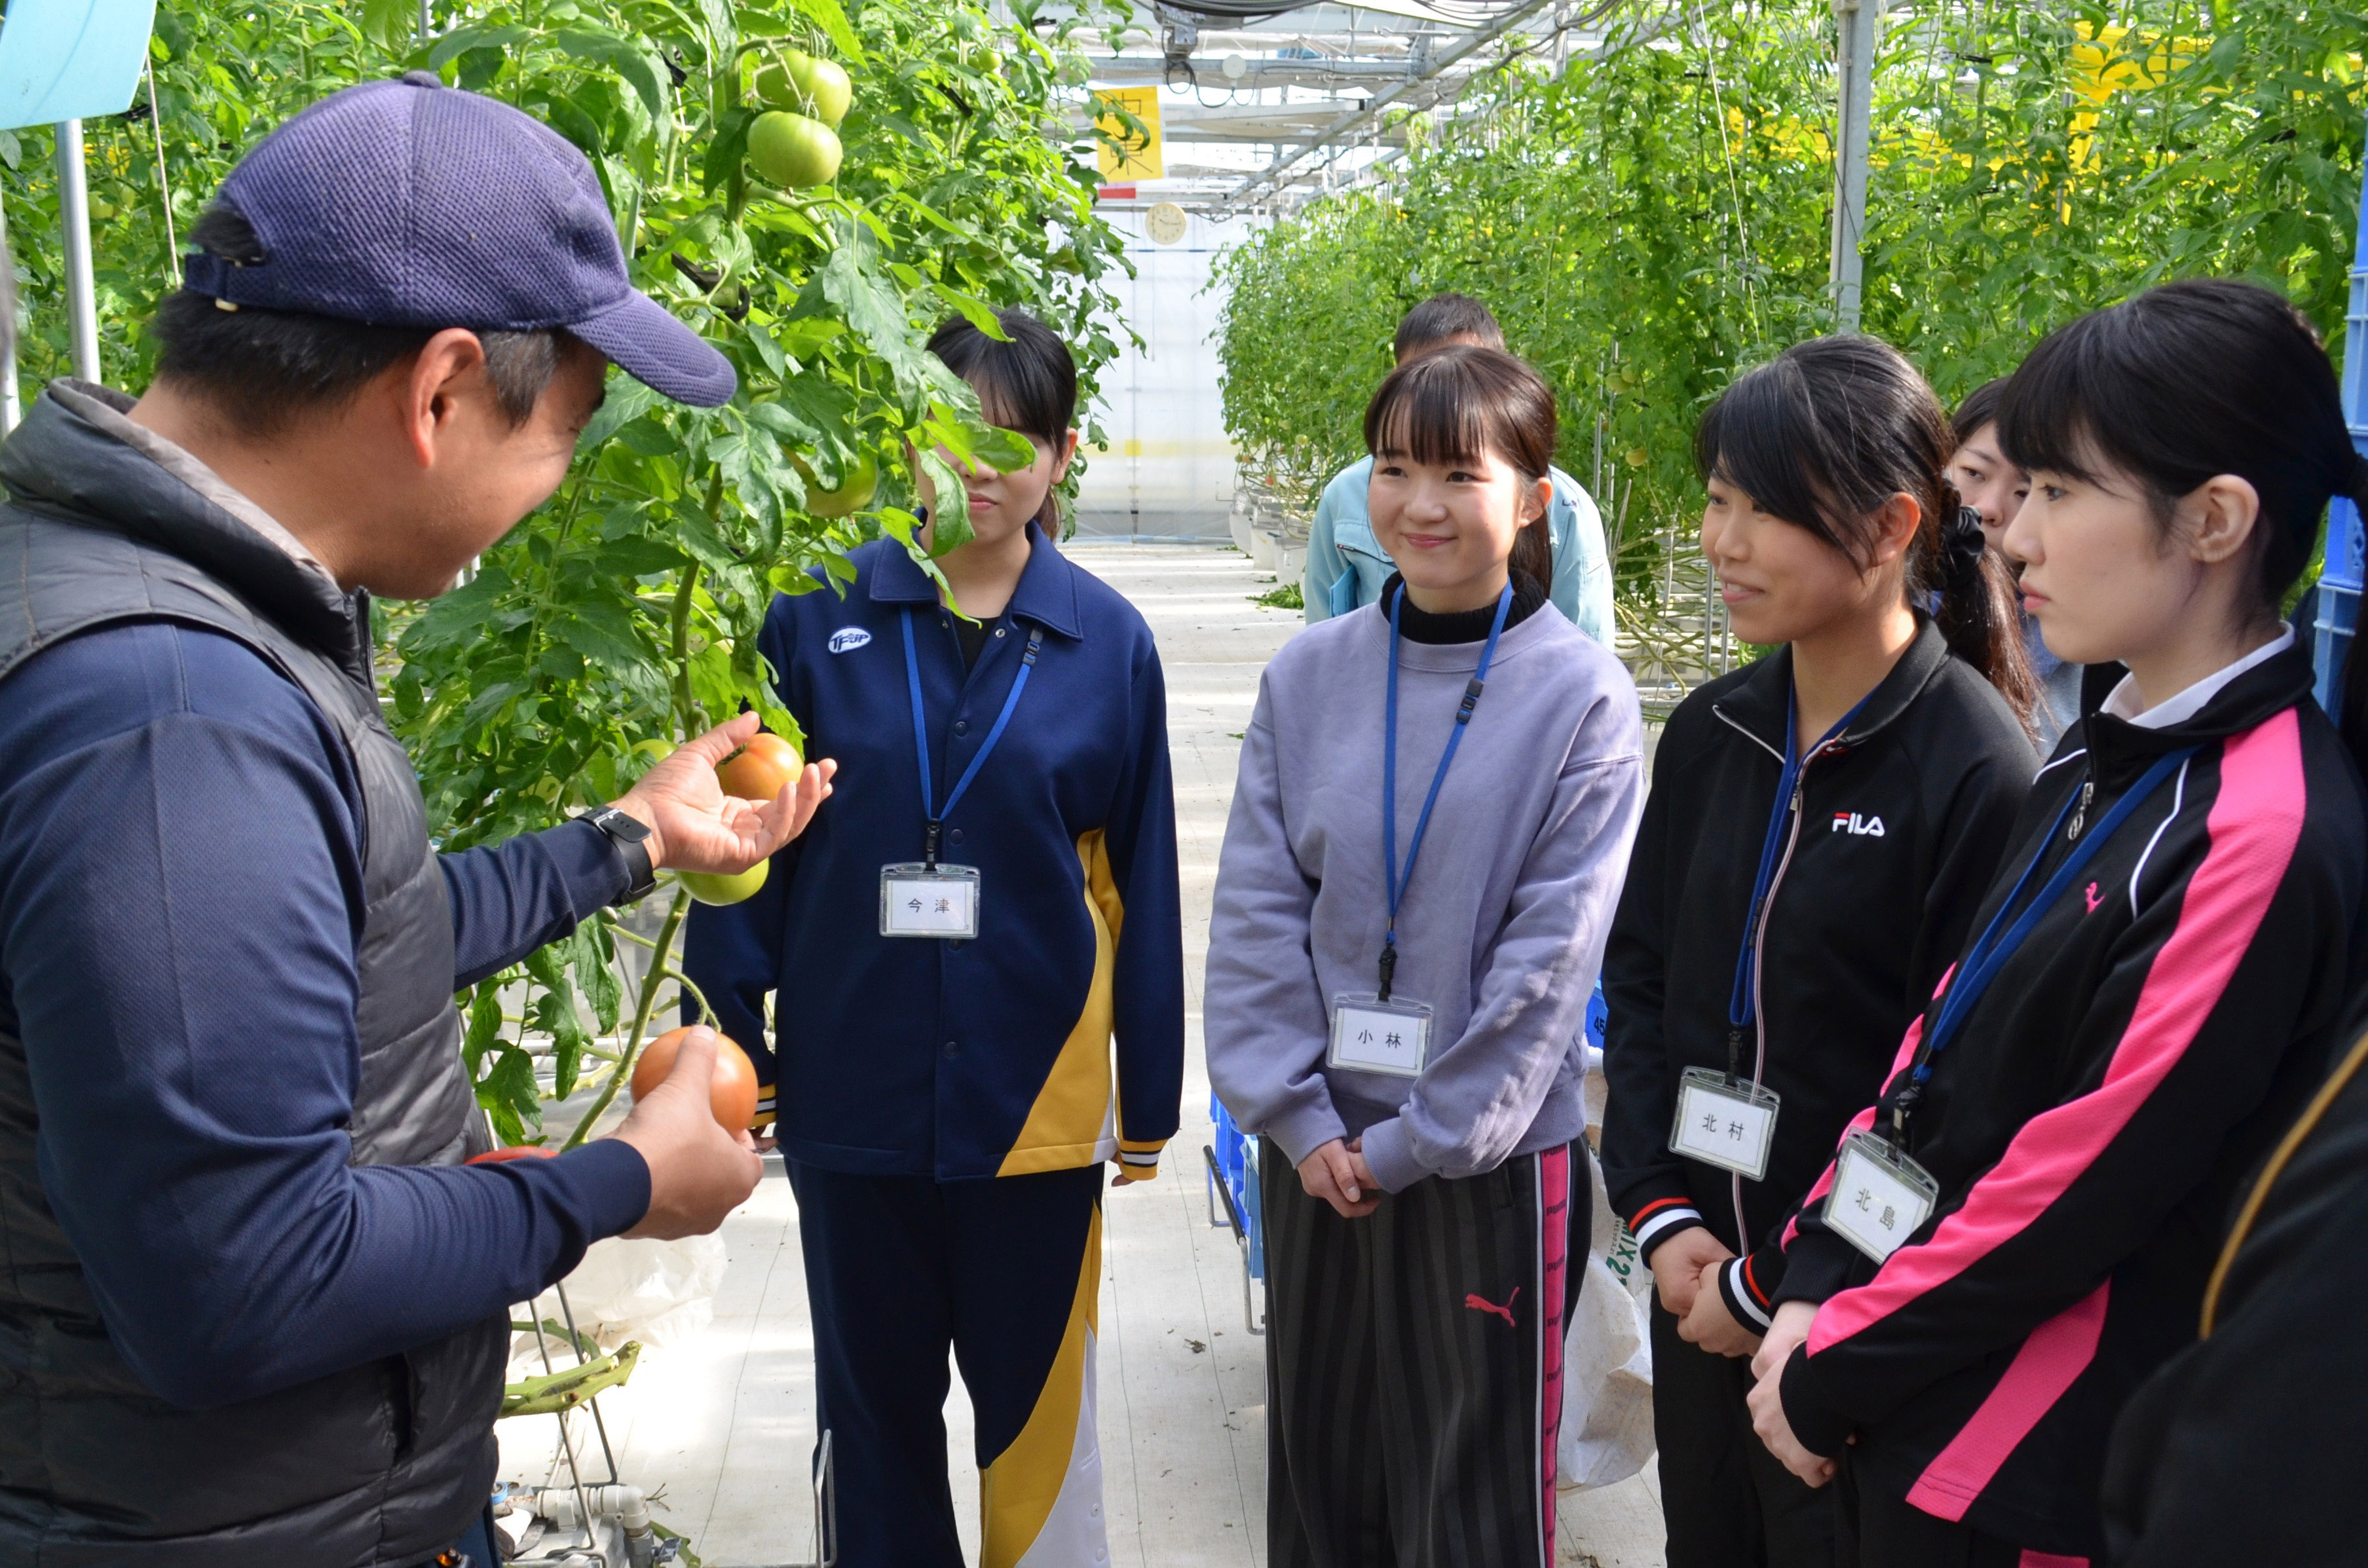 竹内さんから収穫の仕方を教わる学生